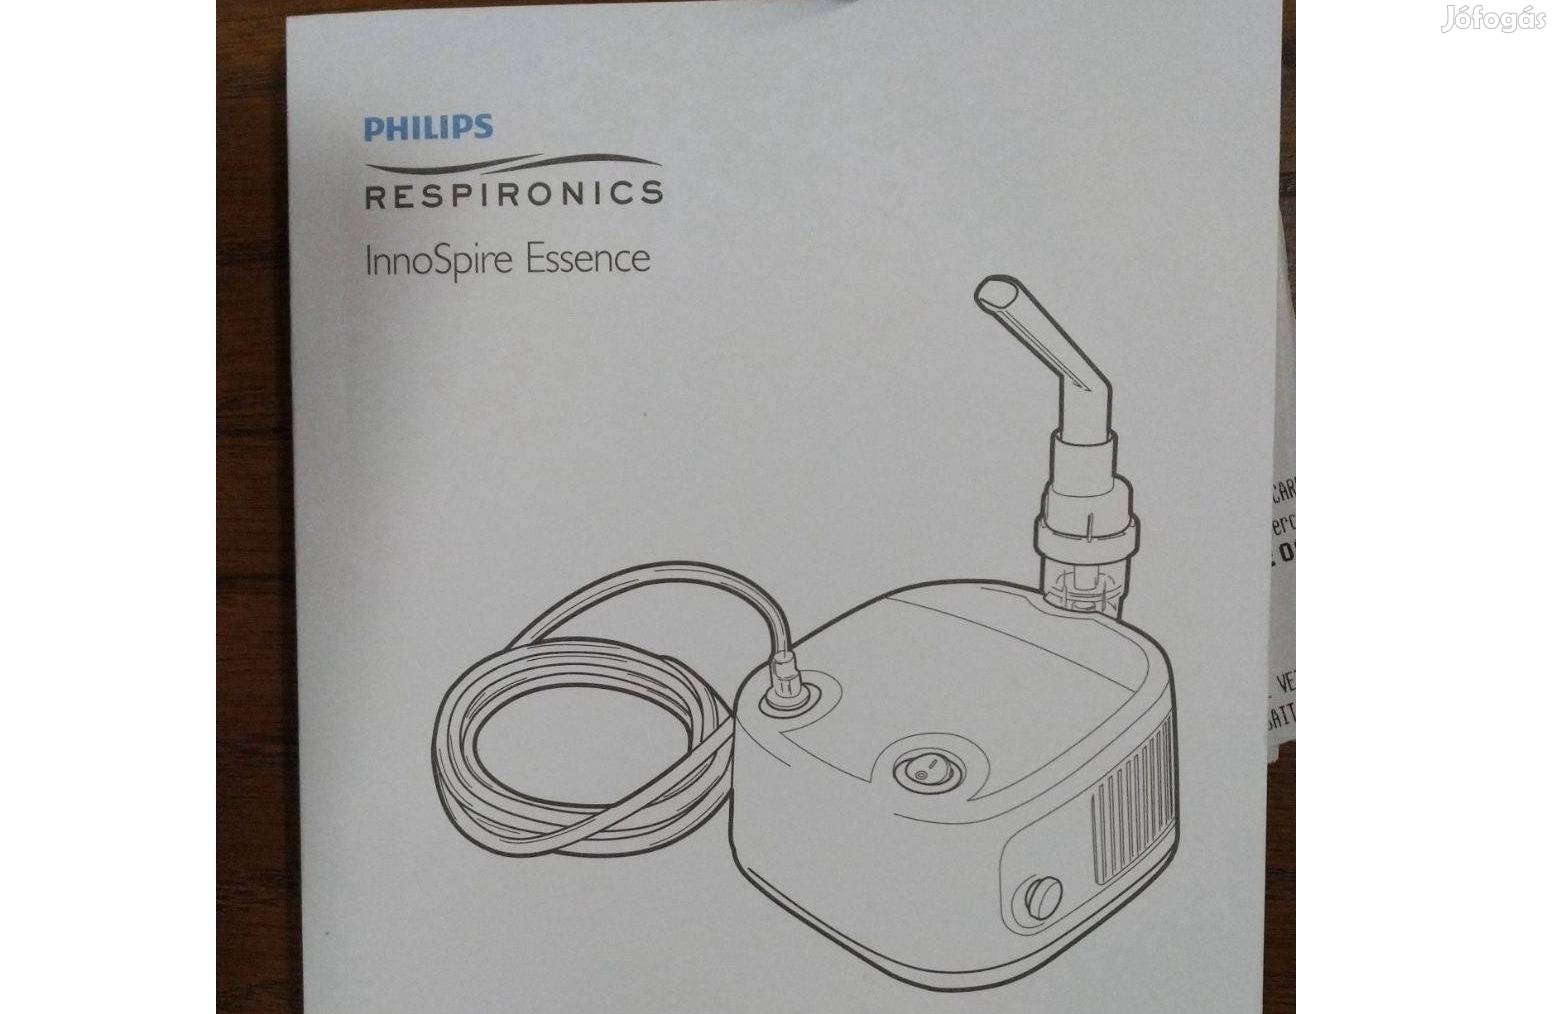 Philips Respironics inhalátor - Gyógyászati segédeszköz